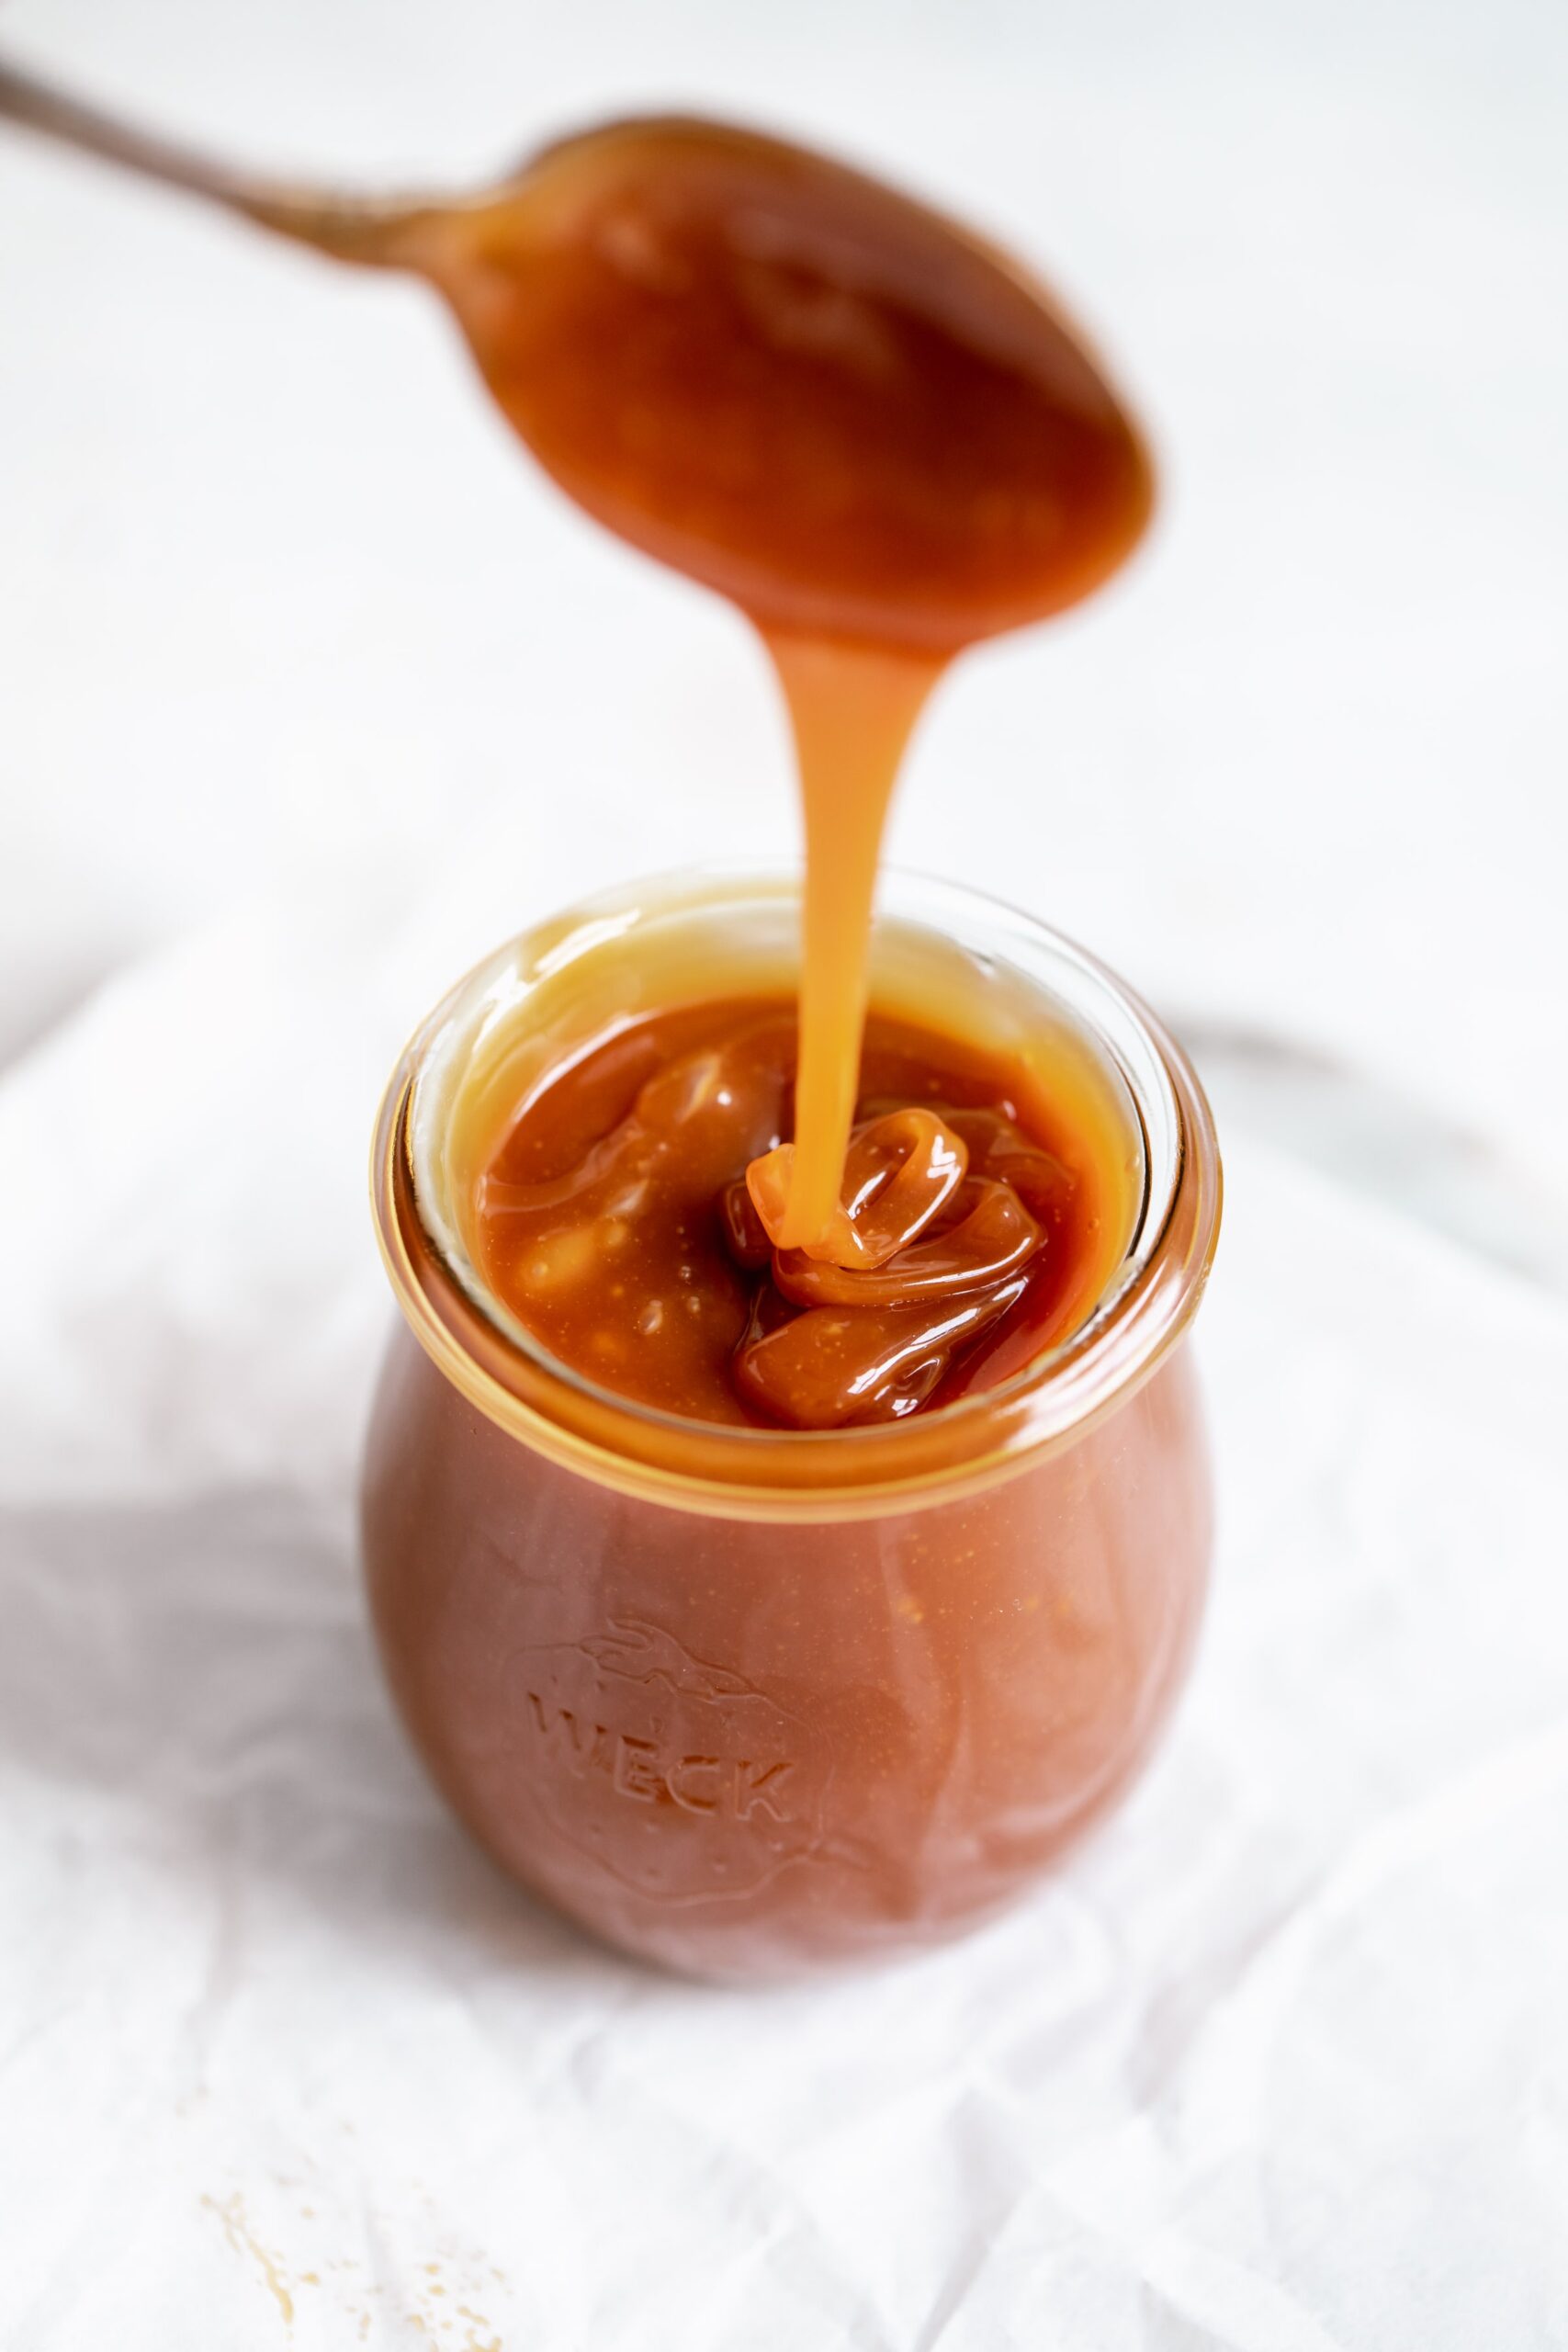 How to Make Homemade Caramel